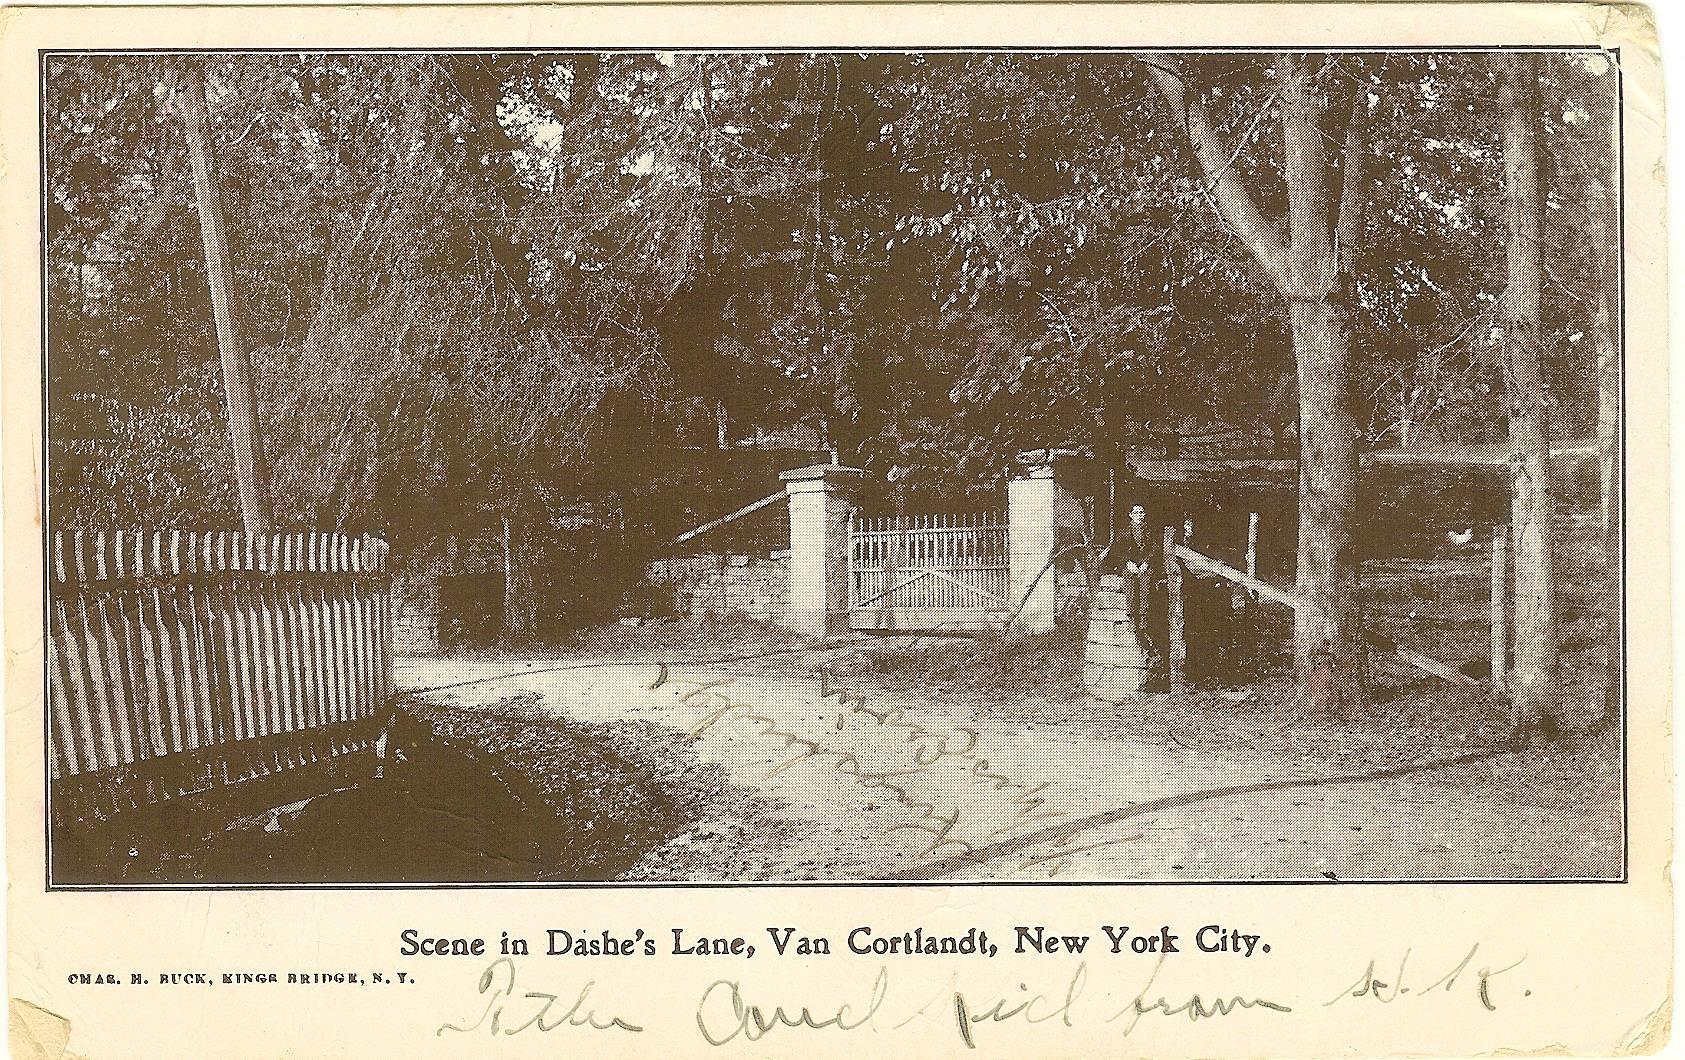 Scene in Dashe's Lane, Van Cortlandt, NYC